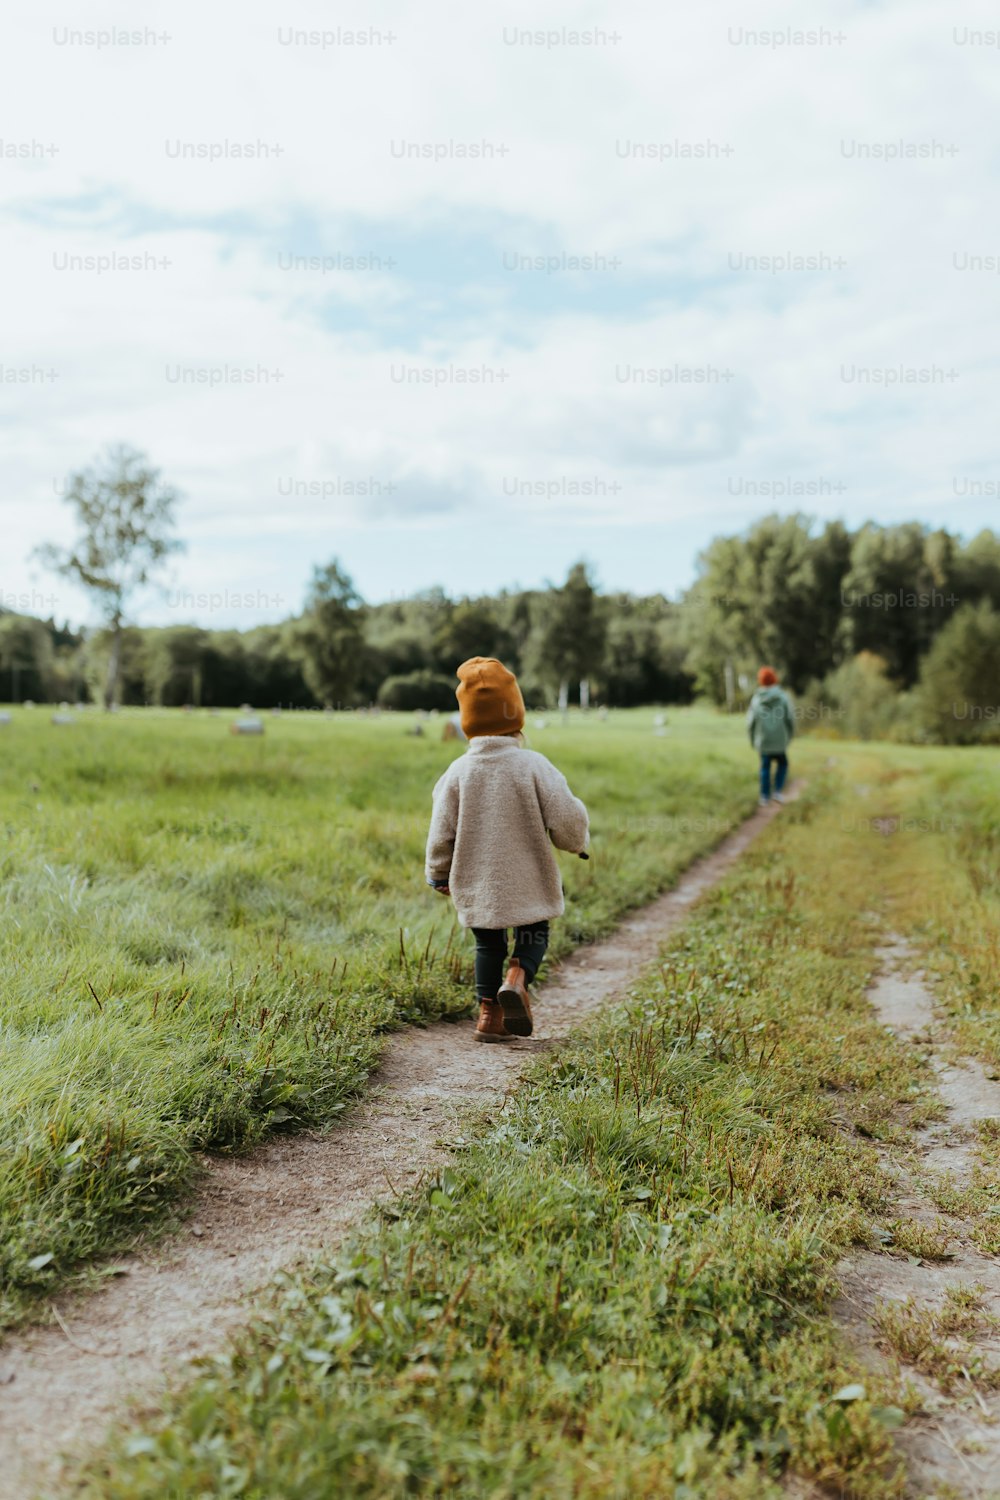 Una niña caminando por un camino de tierra